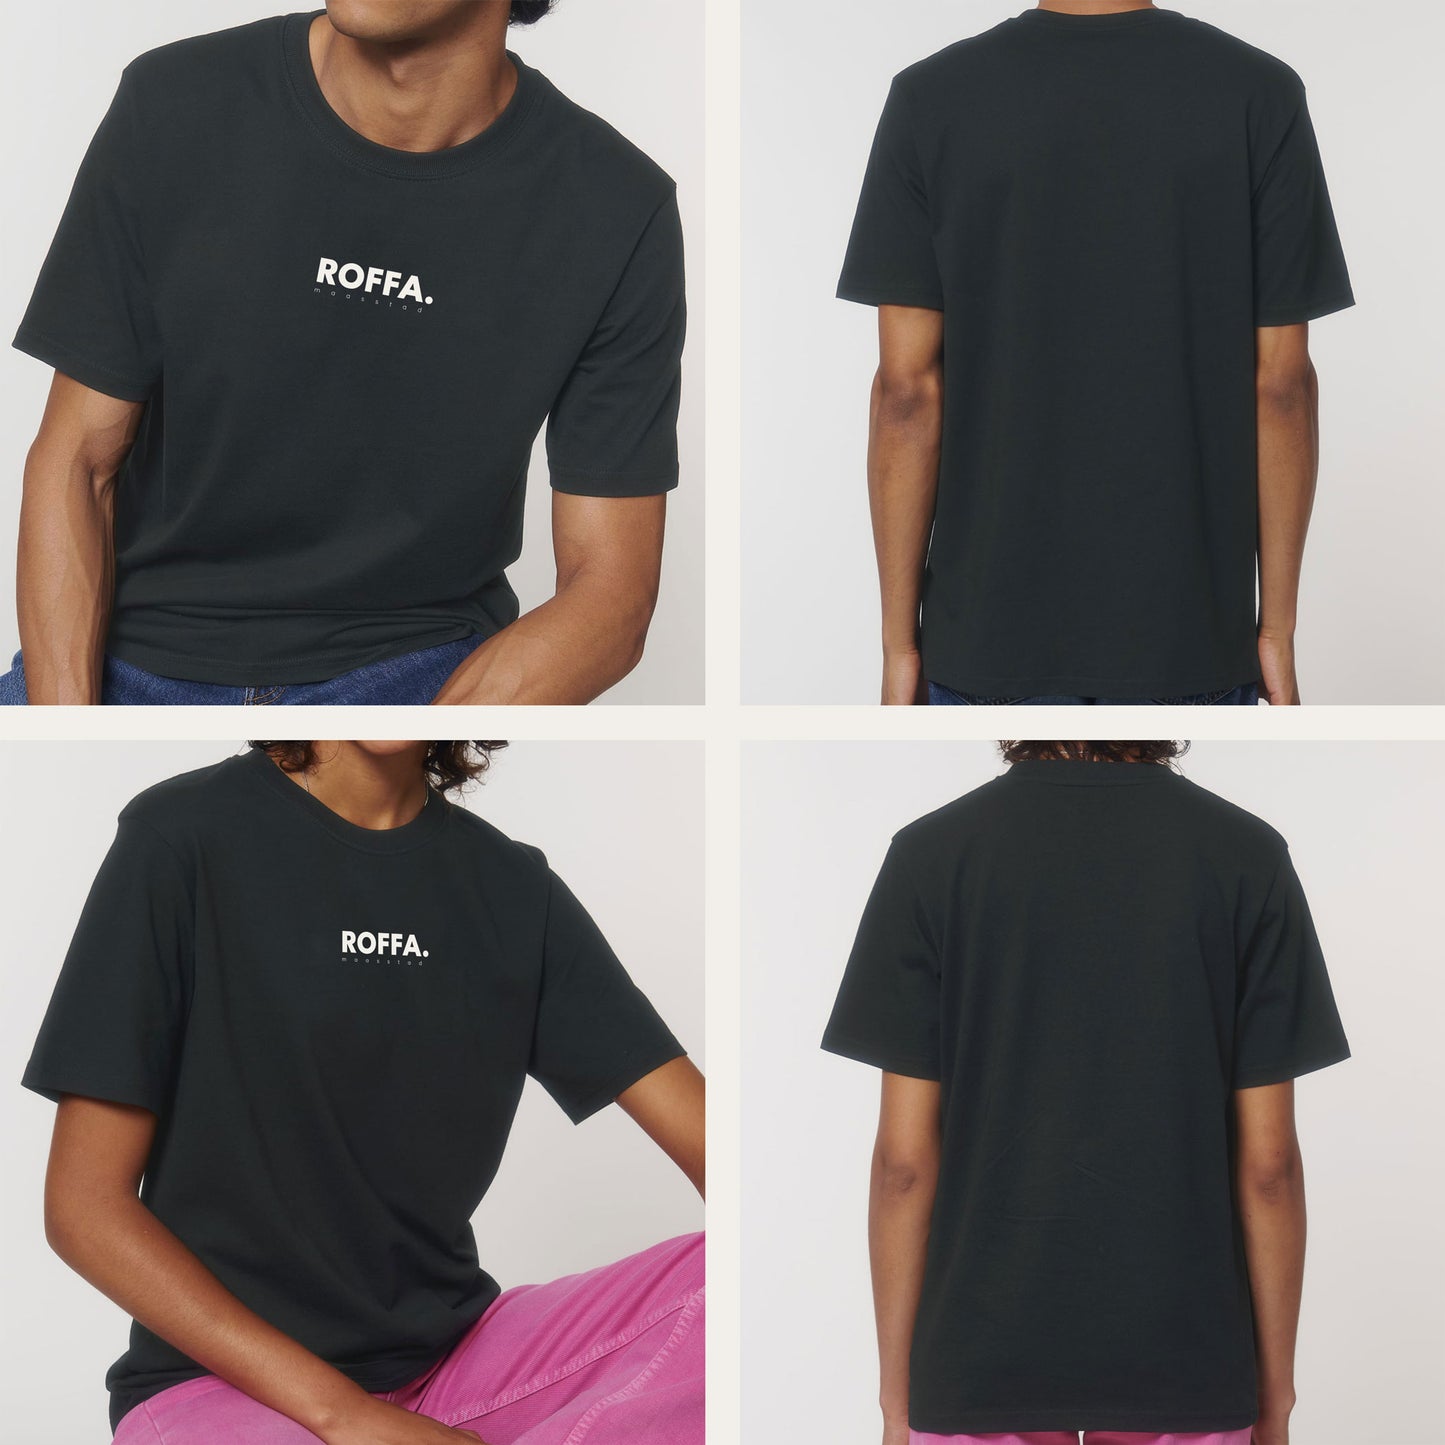 ROFFA. t-shirt heavy - 100% organisch katoen - logo groot